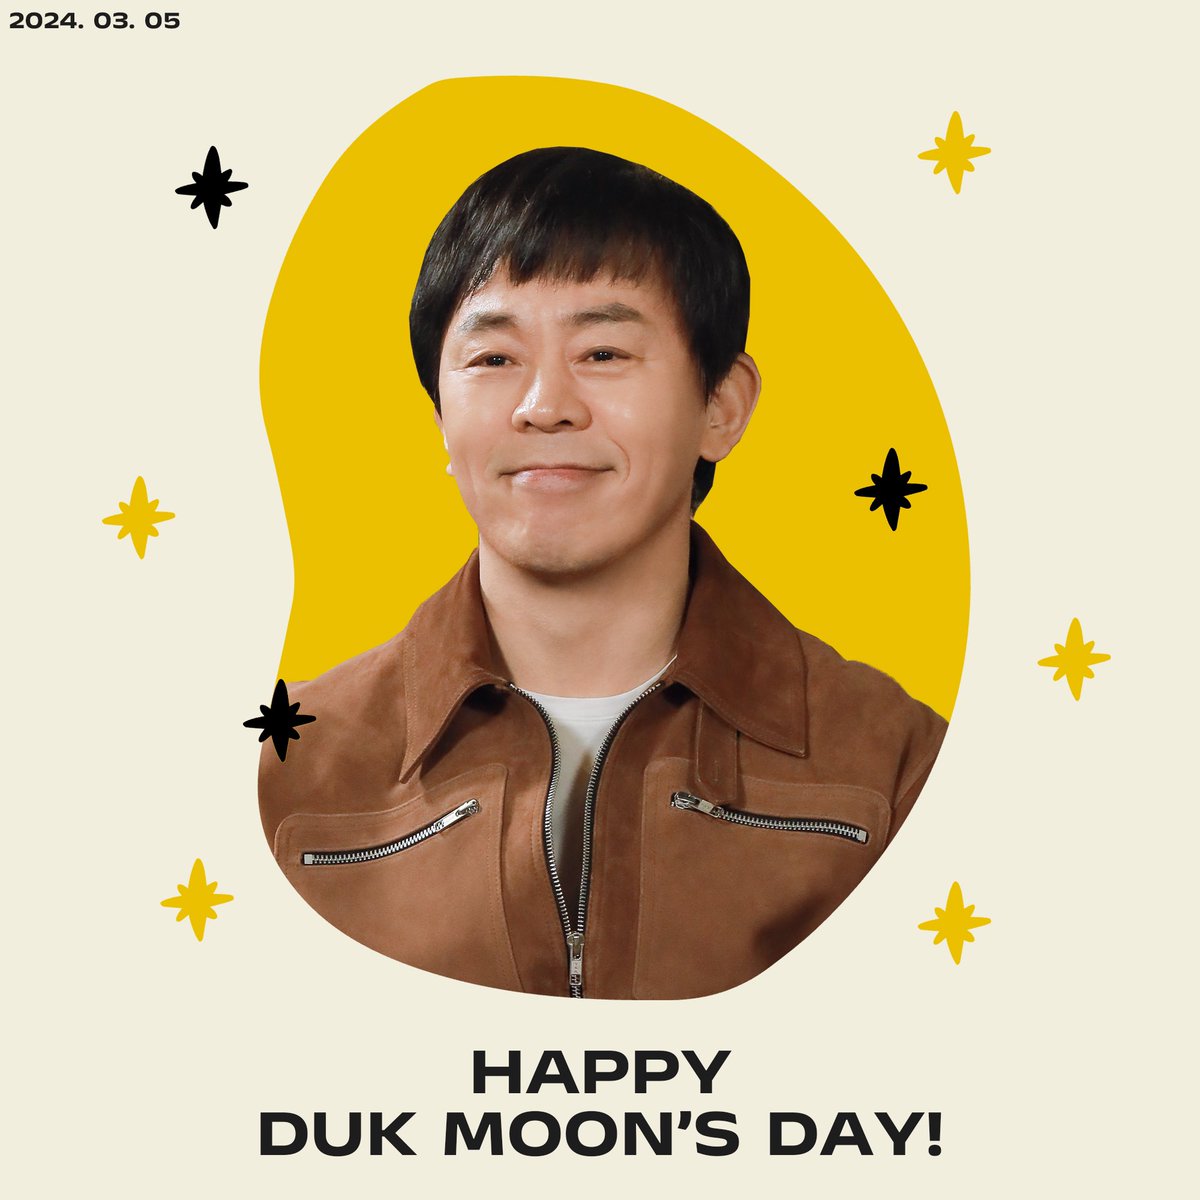 #최덕문 #ChoiDukMoon

2024. 03. 05
Happy DukMoon's Day 큐트 ver. 😗